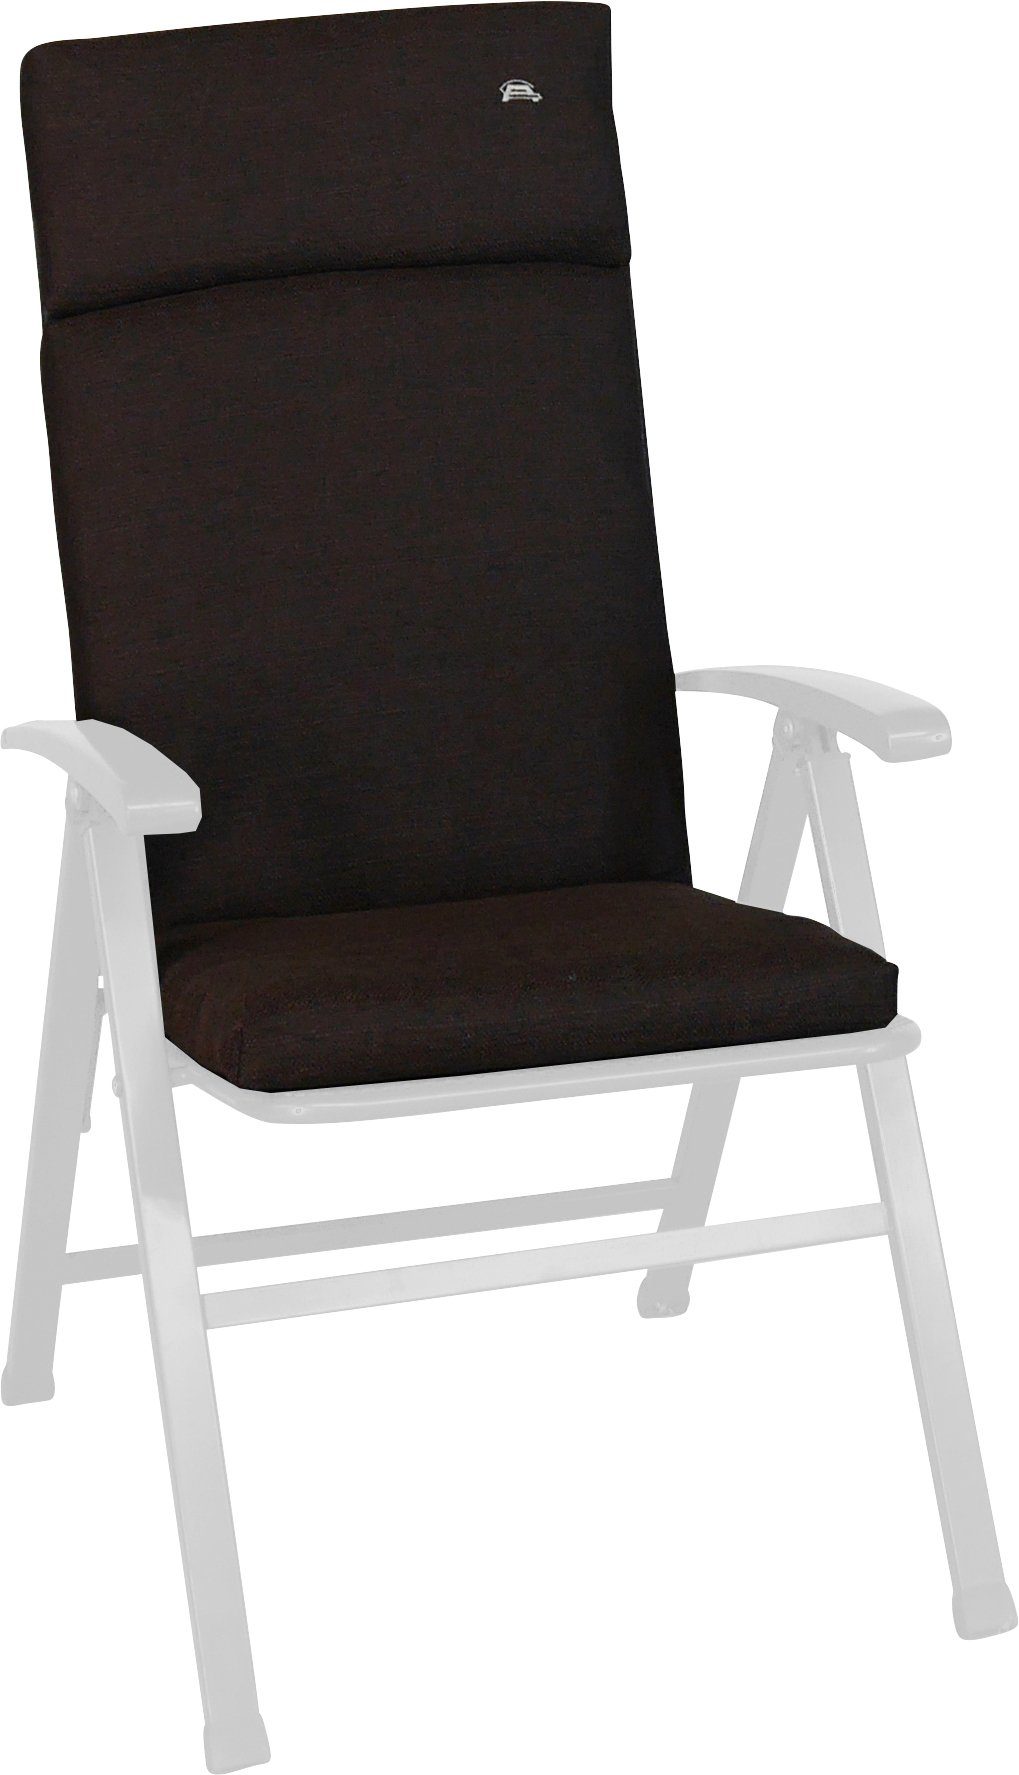 Angerer Freizeitmöbel Sesselauflage Smart, (B/T): cm 47x112 ca. braun